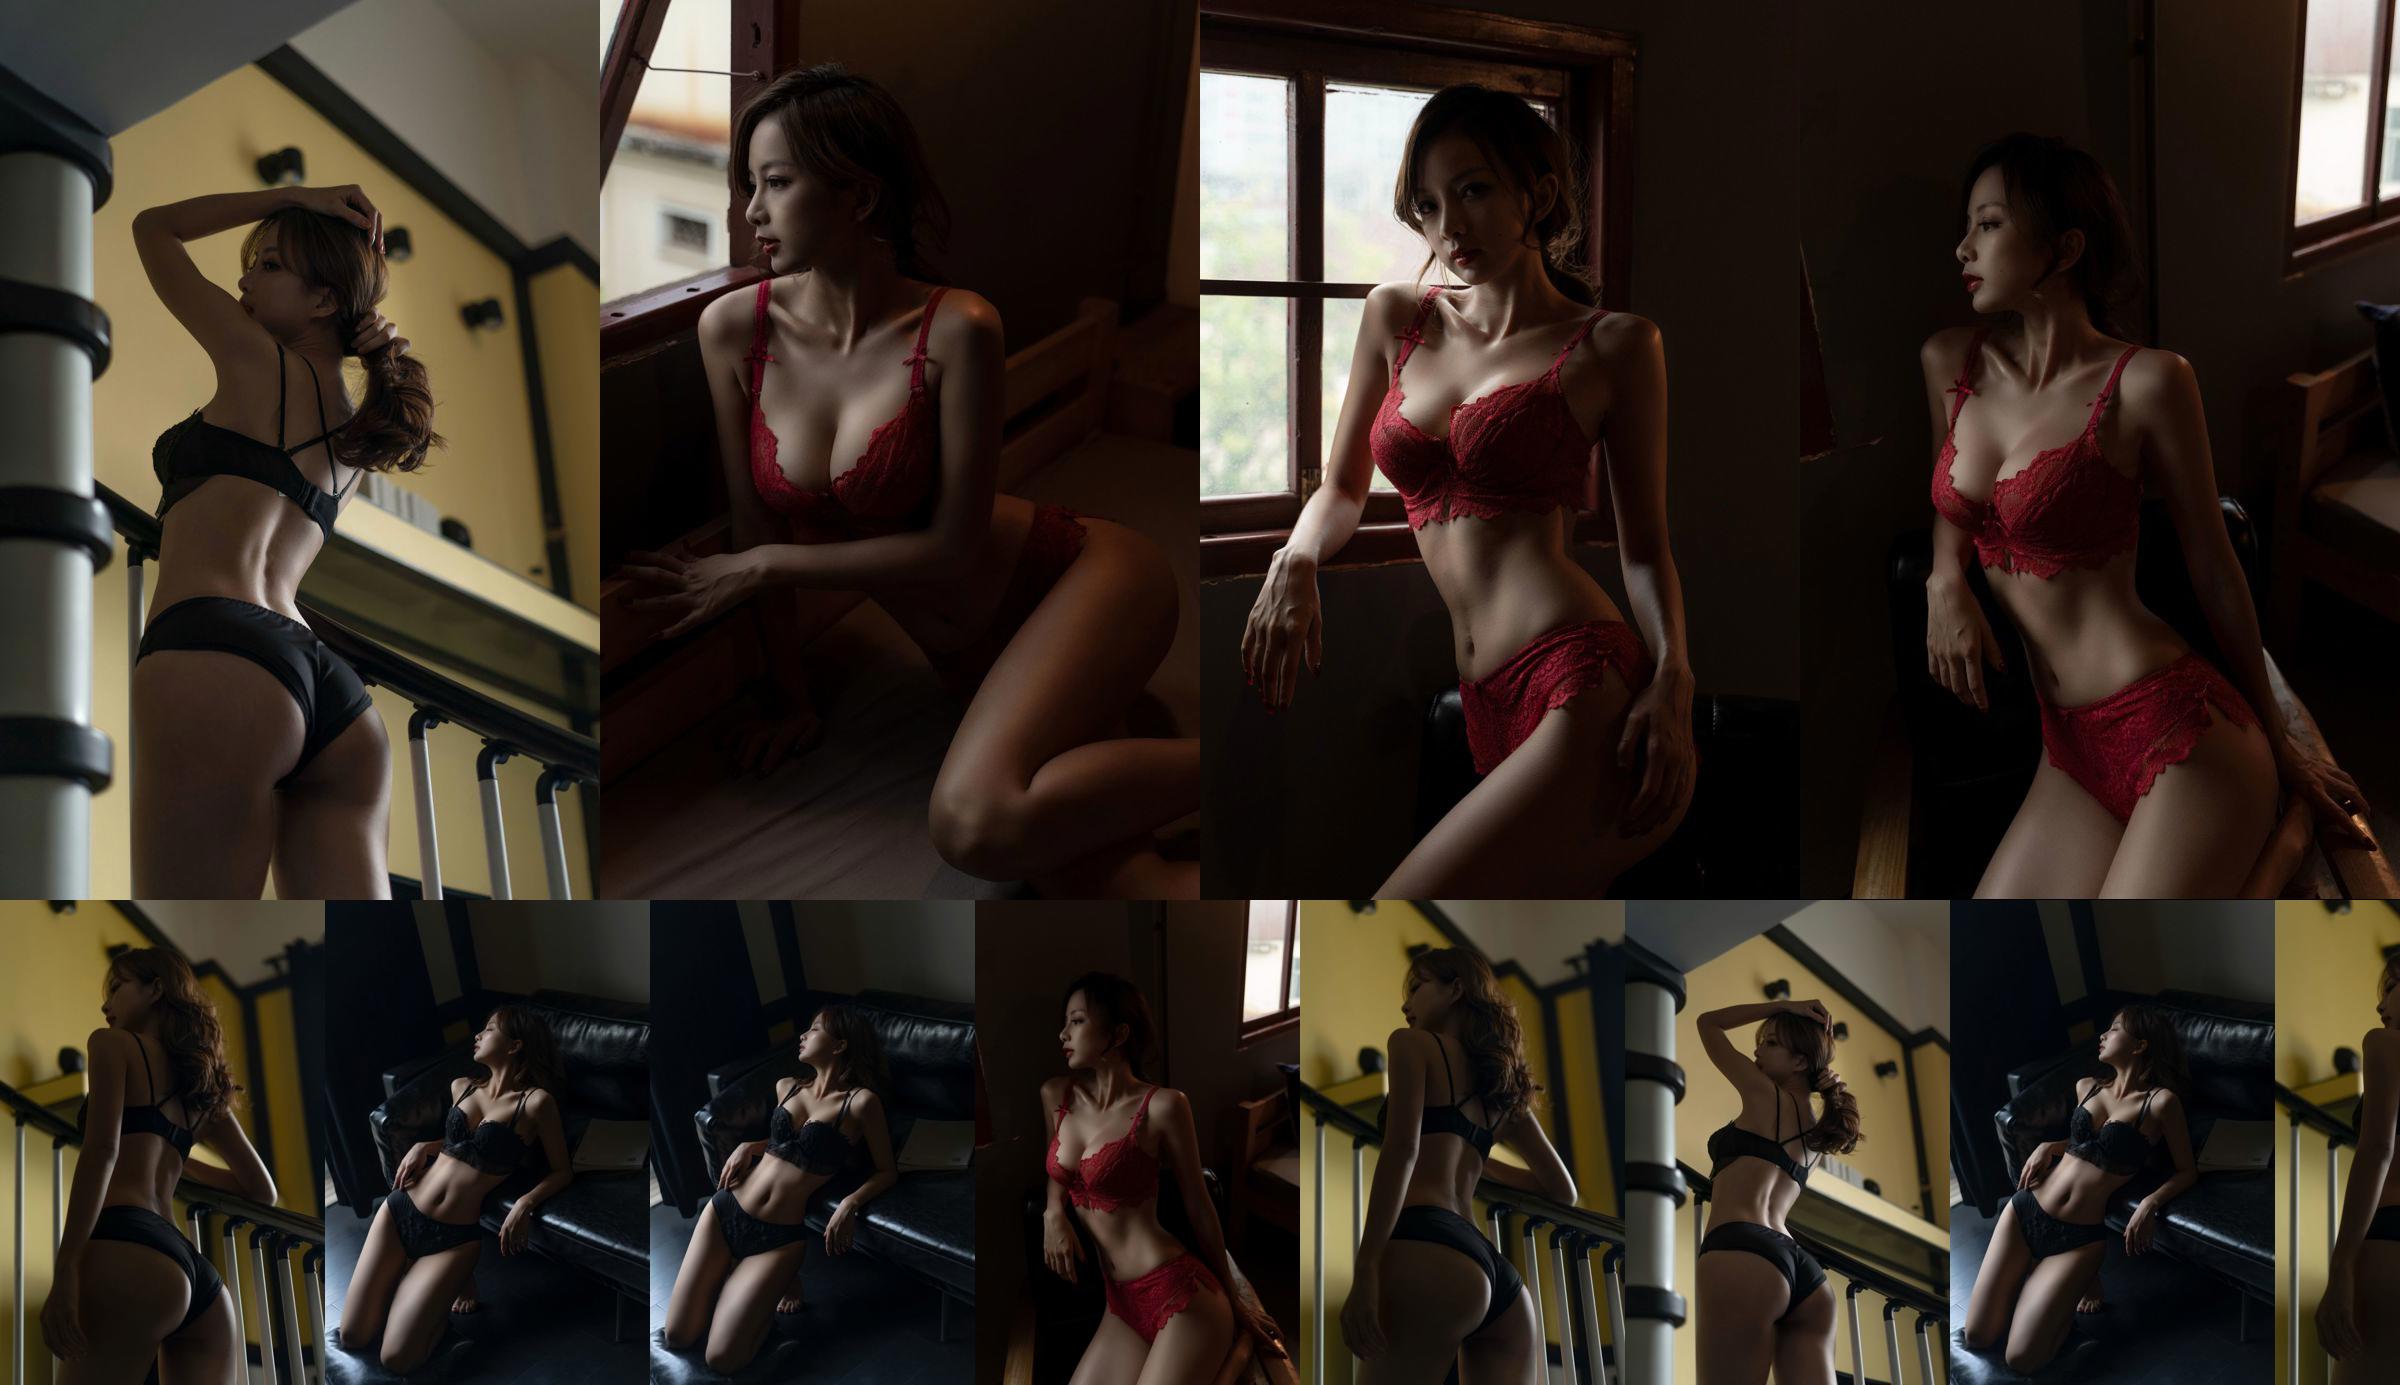 [Net rode COSER-foto] Nicole Satsuki - zwart ondergoed No.5caa1a Pagina 1